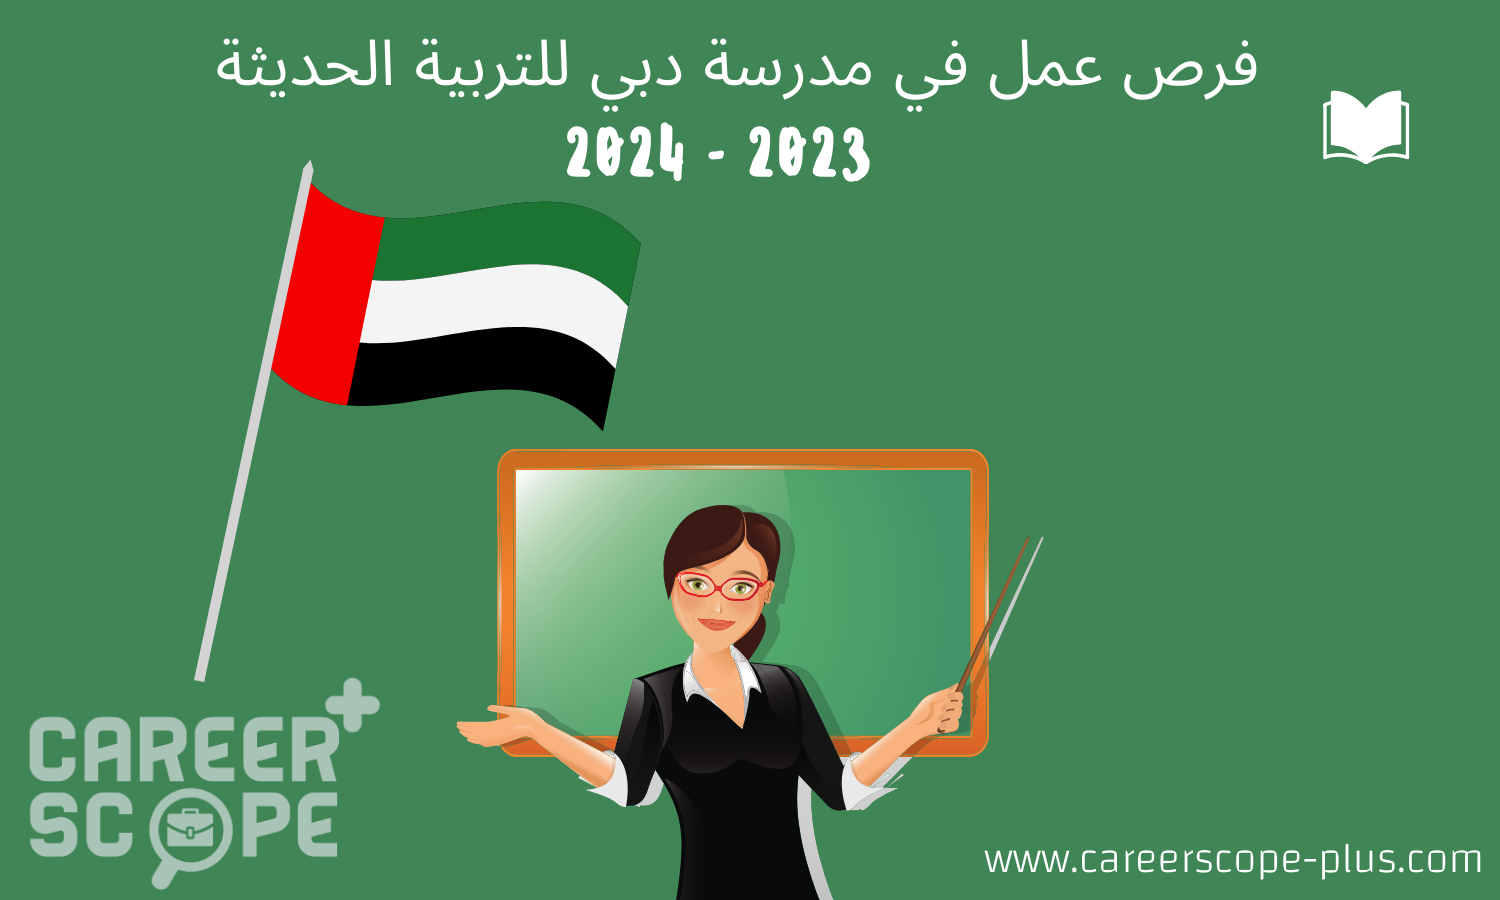 وظائف مدرسة دبي للتربية الحديثة  2023 - 2024